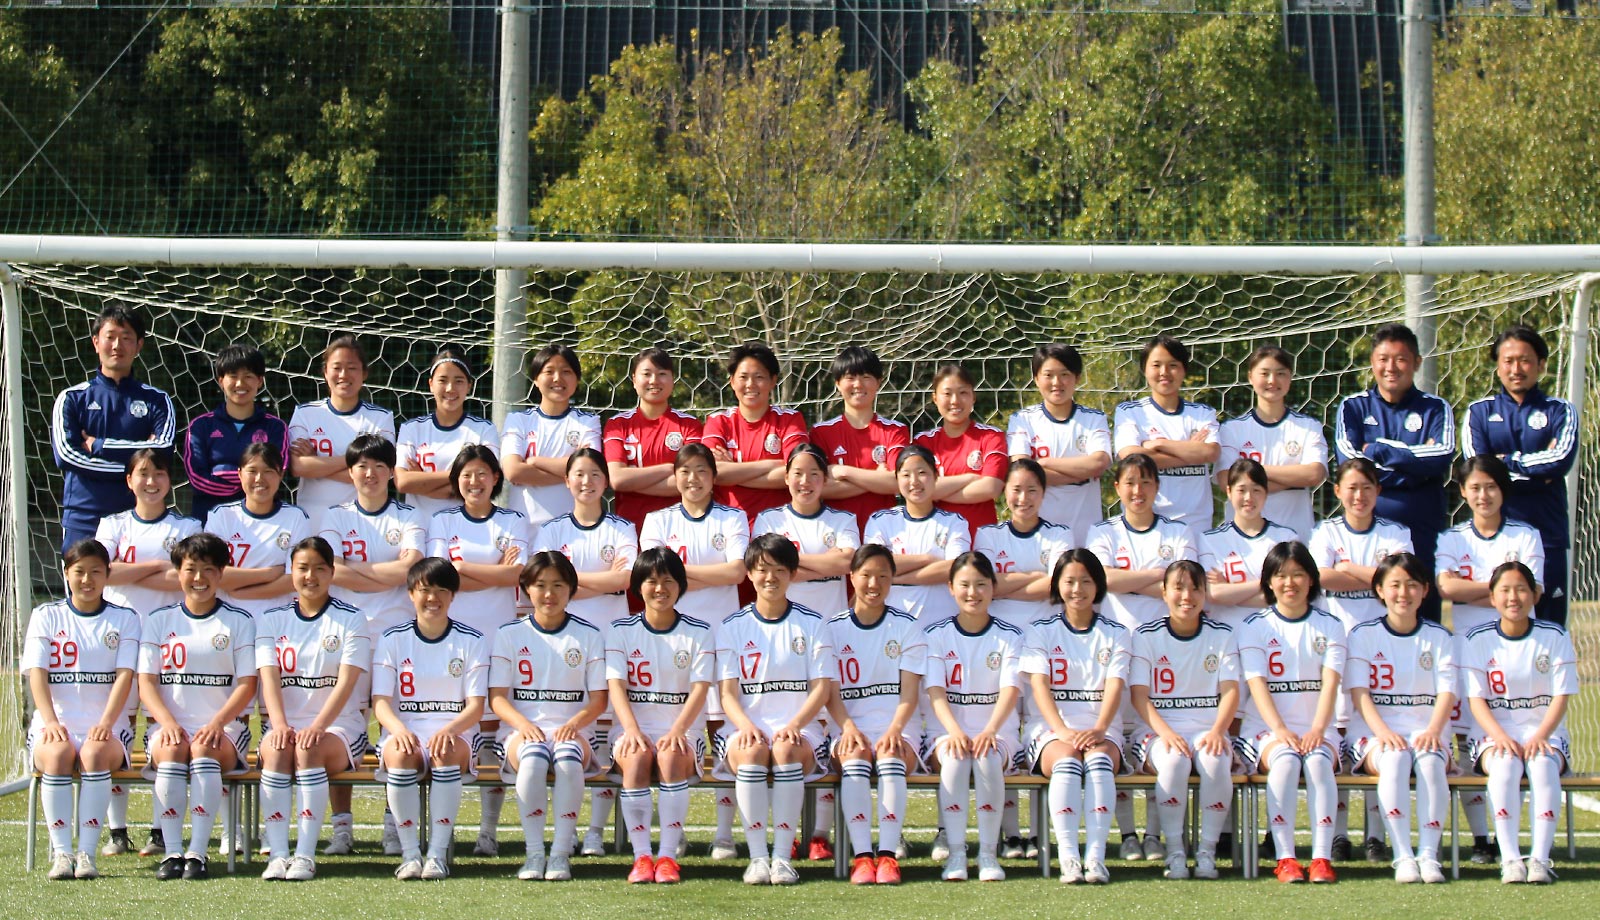 Football Club Women’s Division